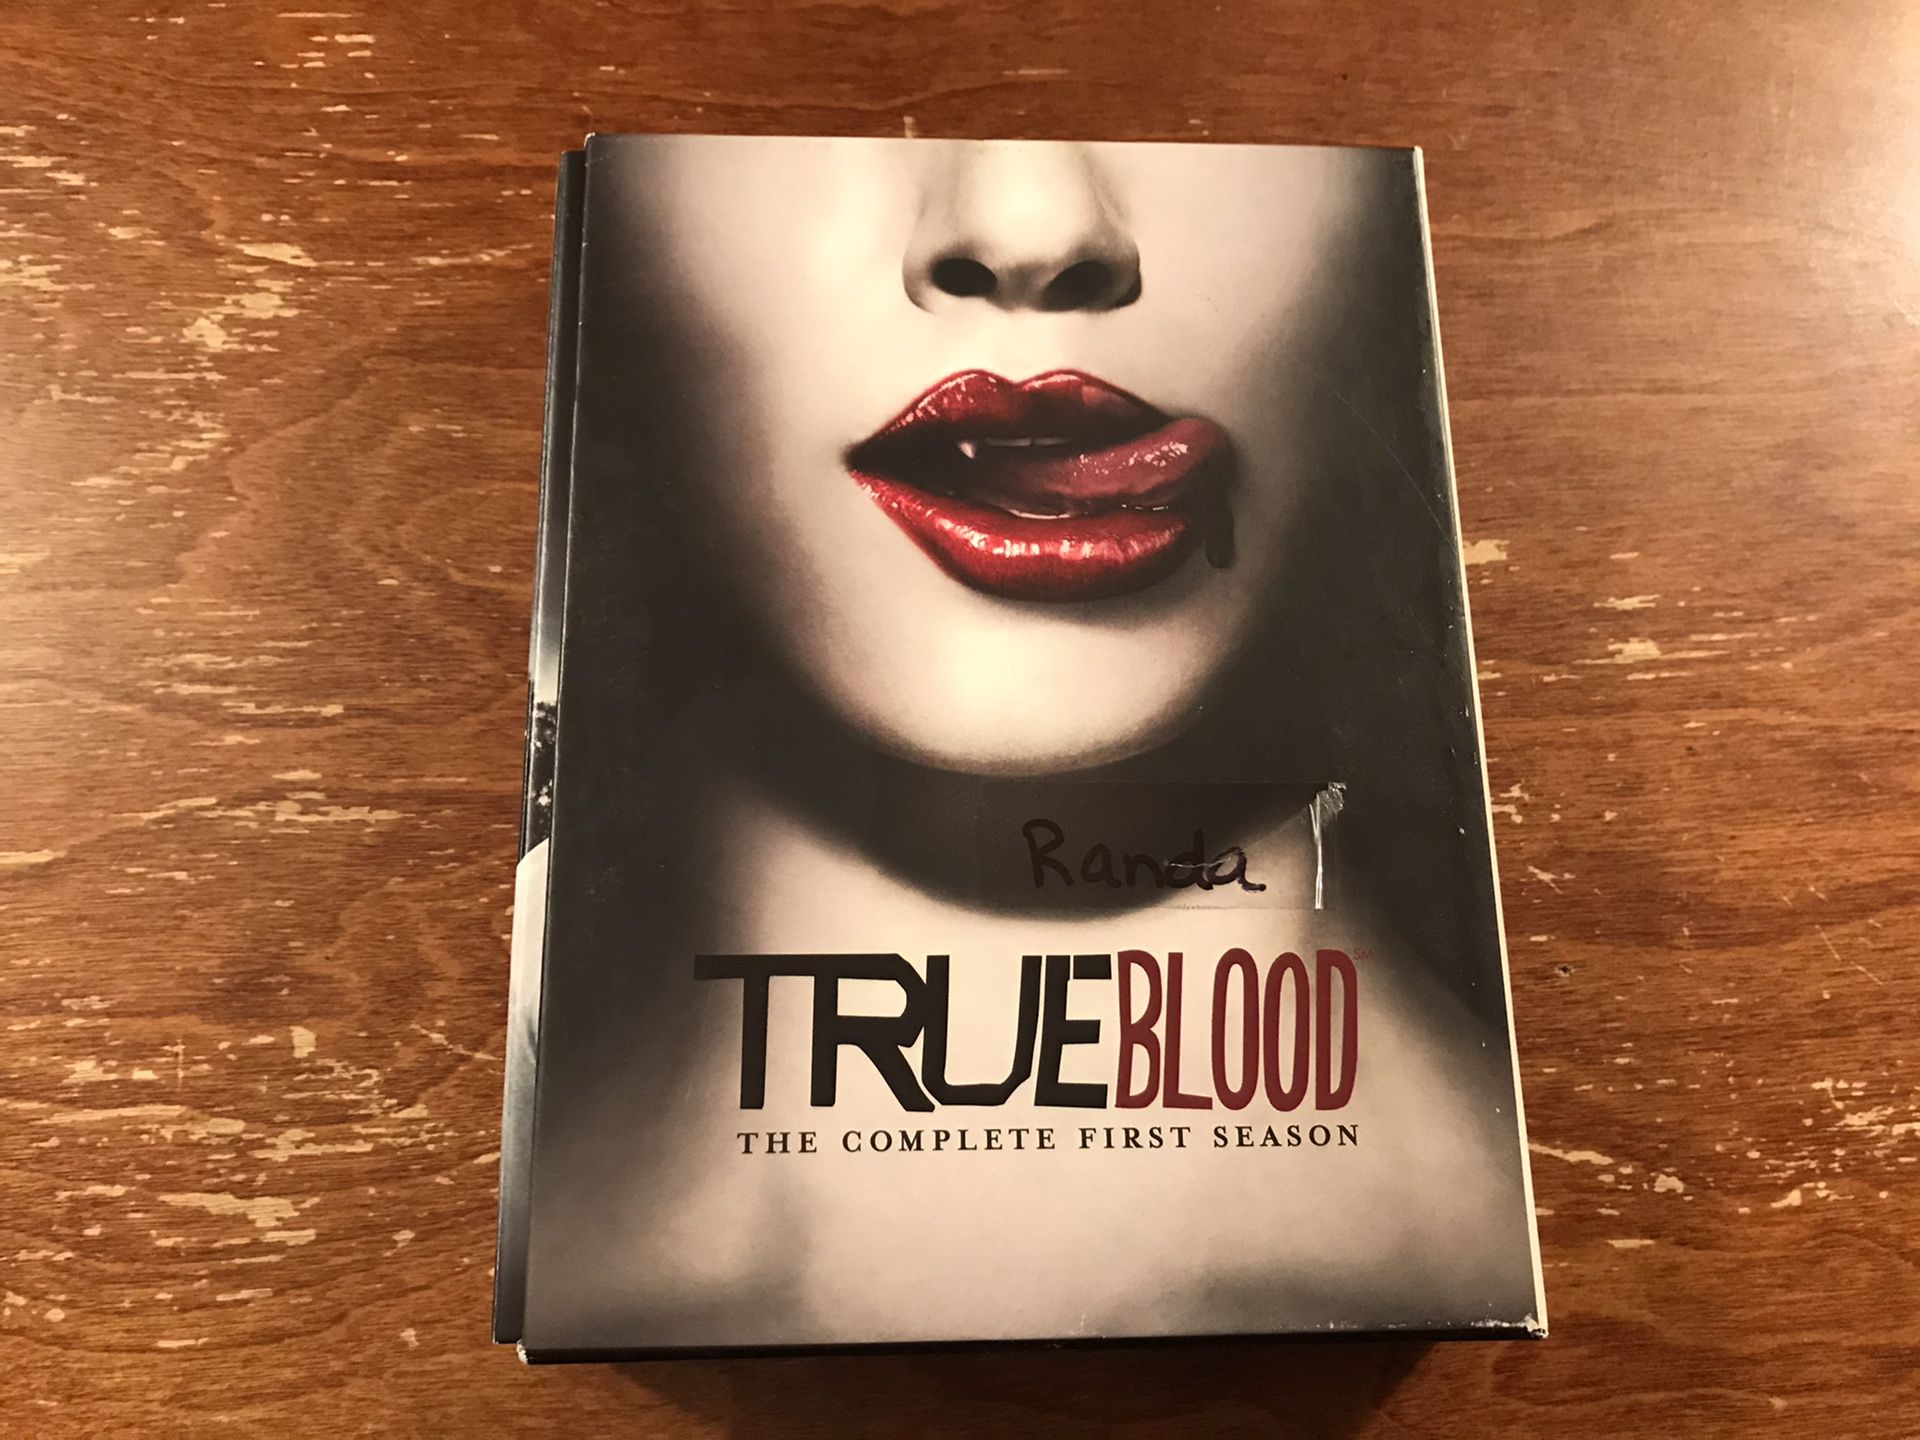 True Blood Season 1 DVD set